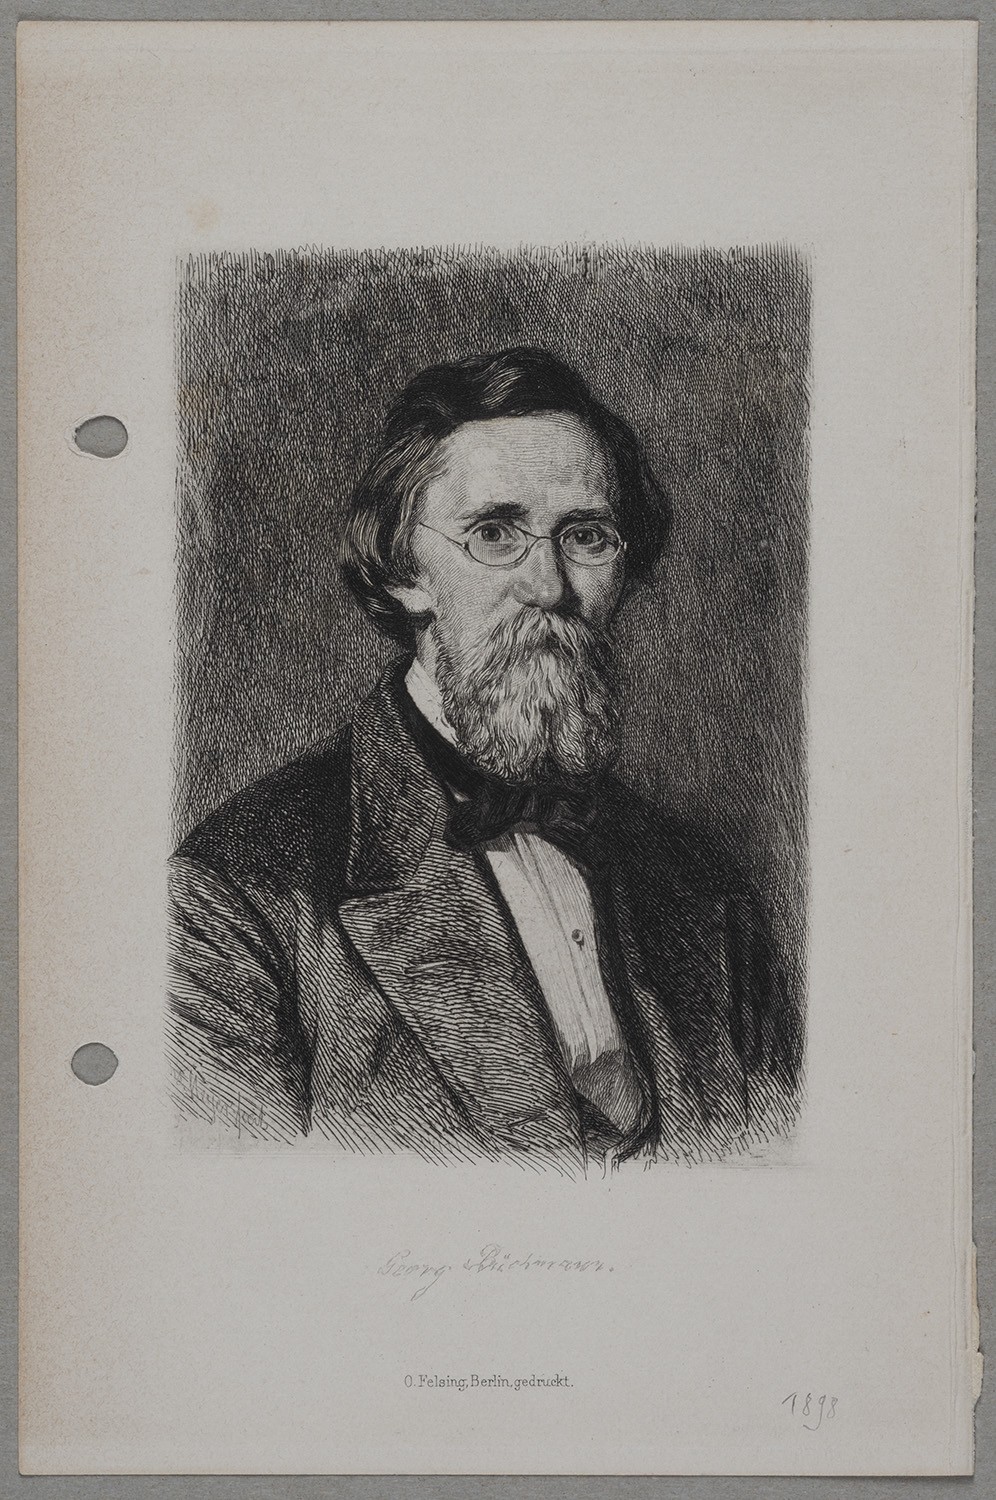 Büchmann, Georg (1822-1884), Philologe (Landesgeschichtliche Vereinigung für die Mark Brandenburg e.V., Archiv CC BY)